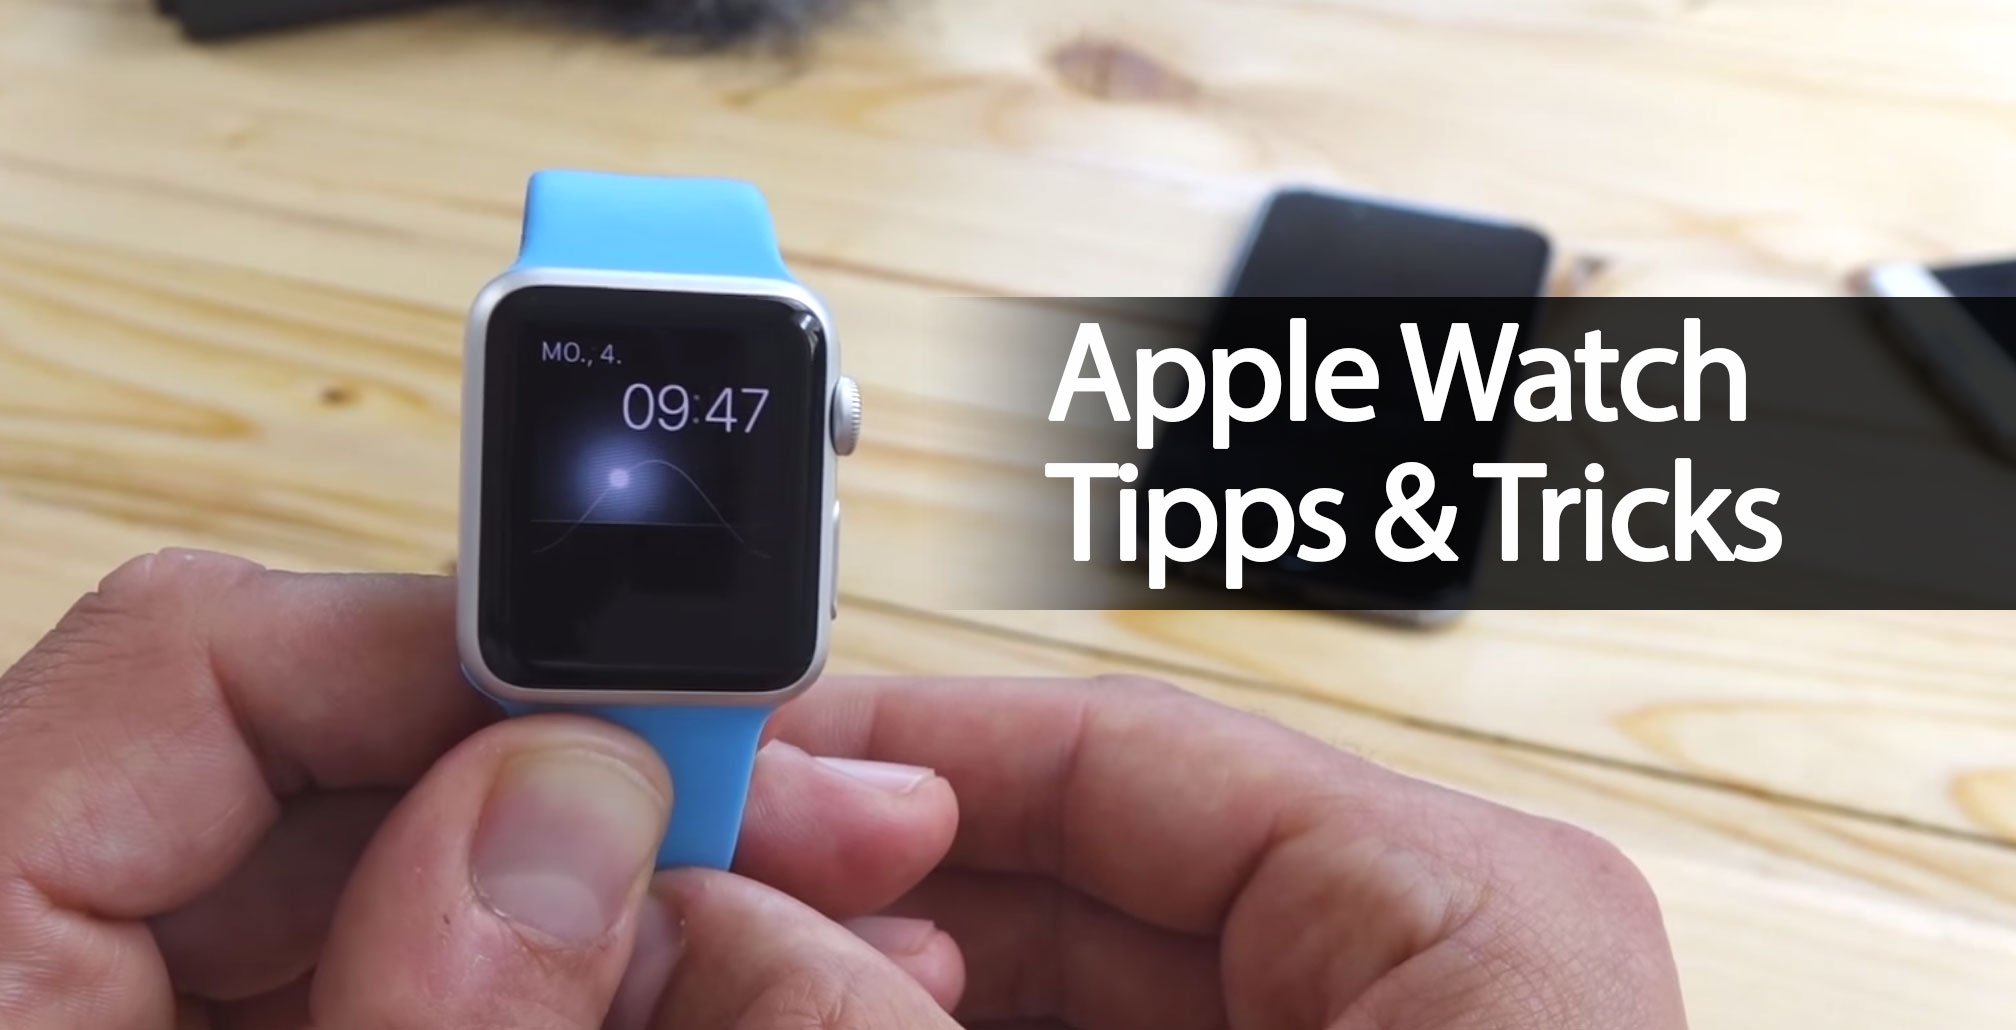 Apple Watch Tipps & Tricks im Video 1